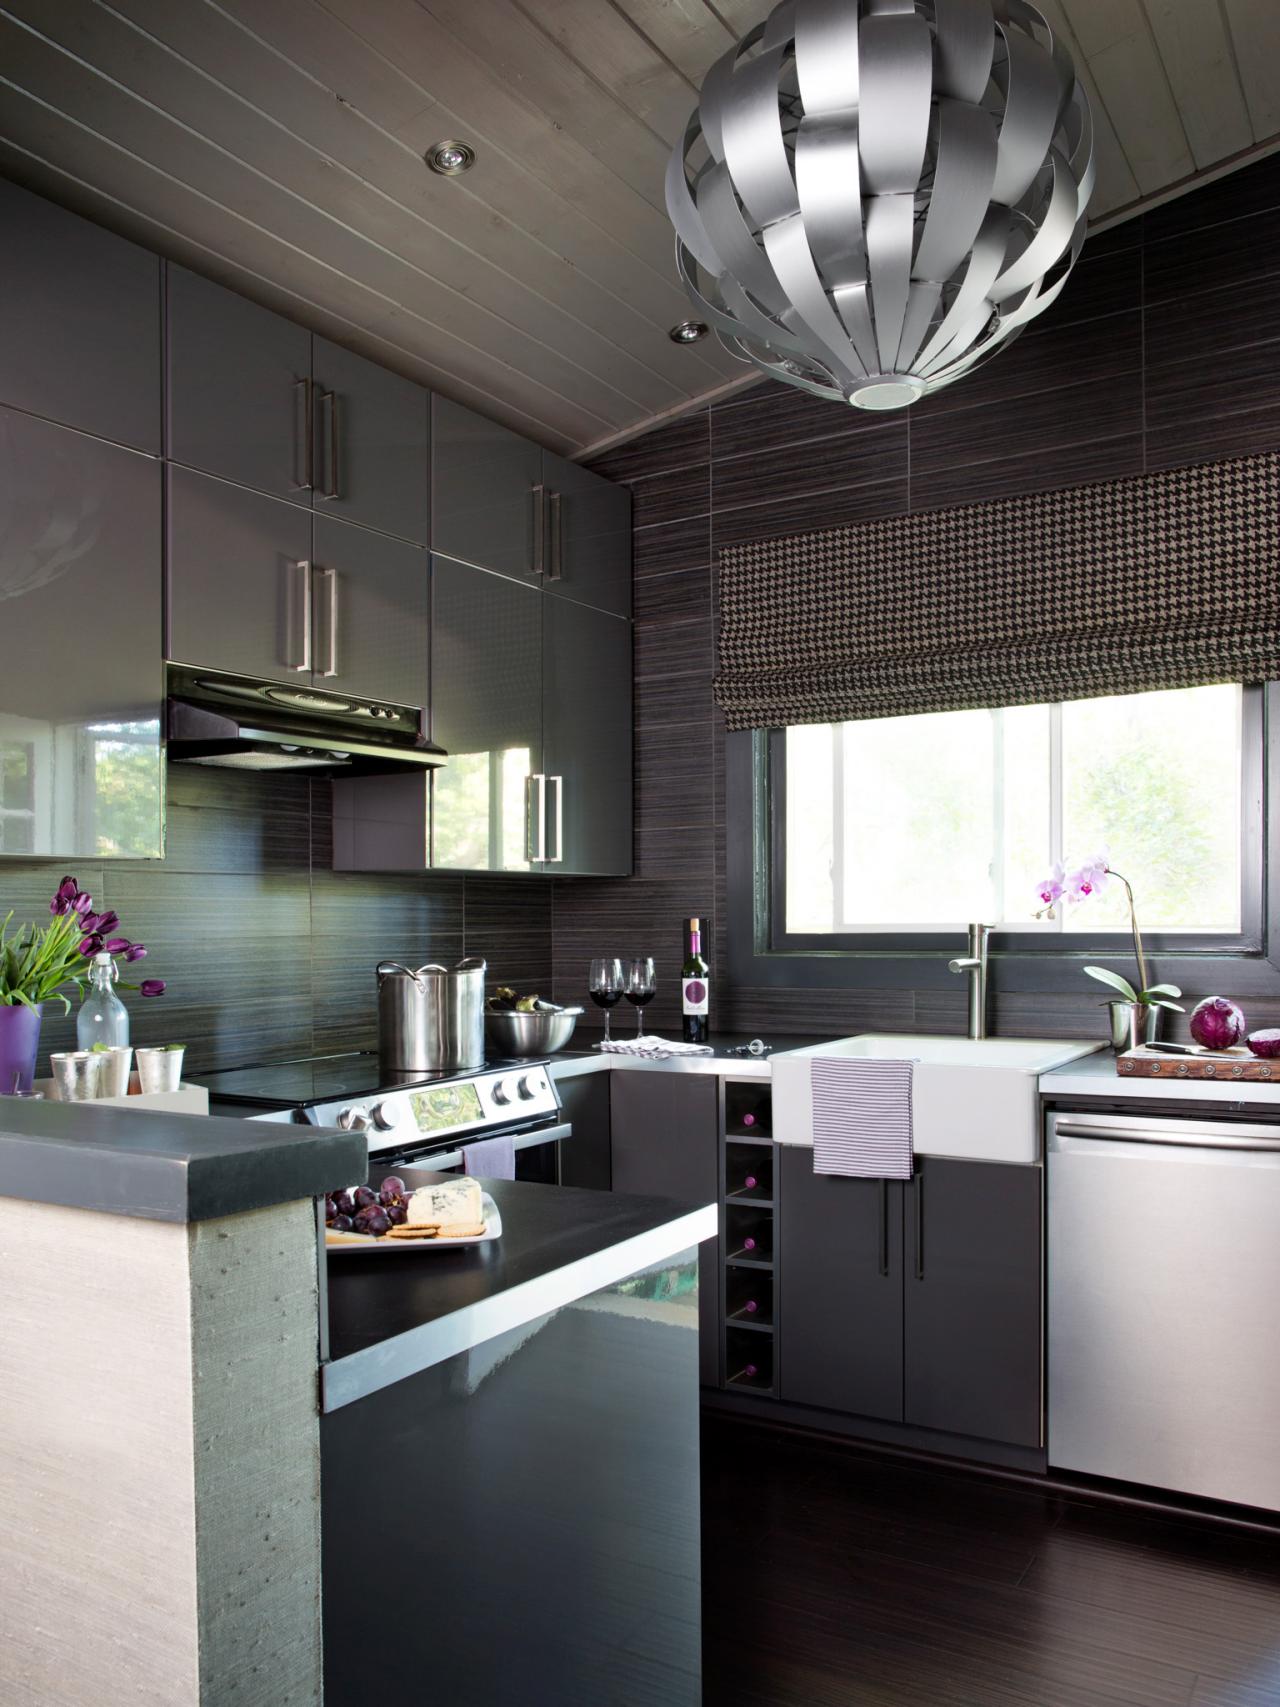 Small-Kitchen Design Tips | DIY Kitchen Design Ideas - Kitchen Cabinets